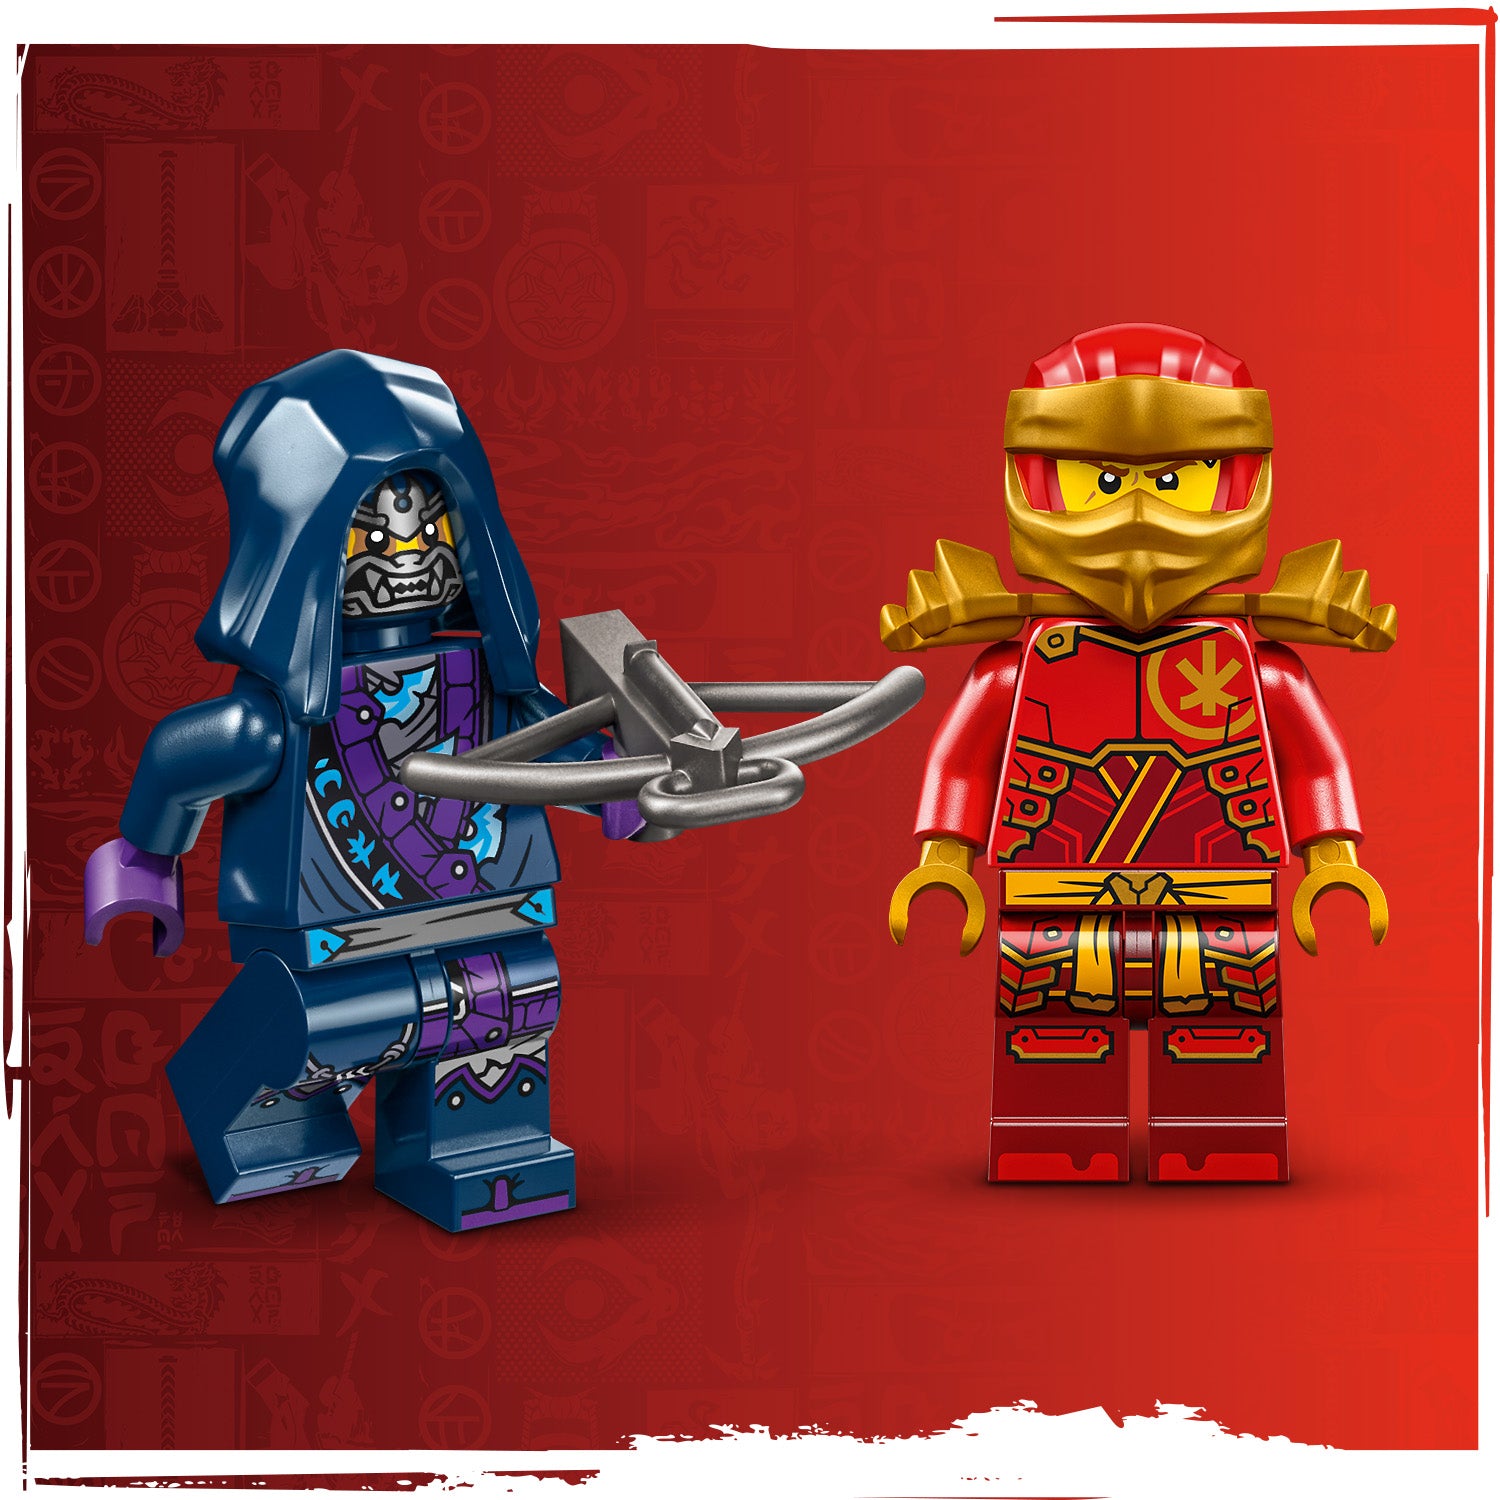 Lego 71801 Kais Rising Dragon Strike